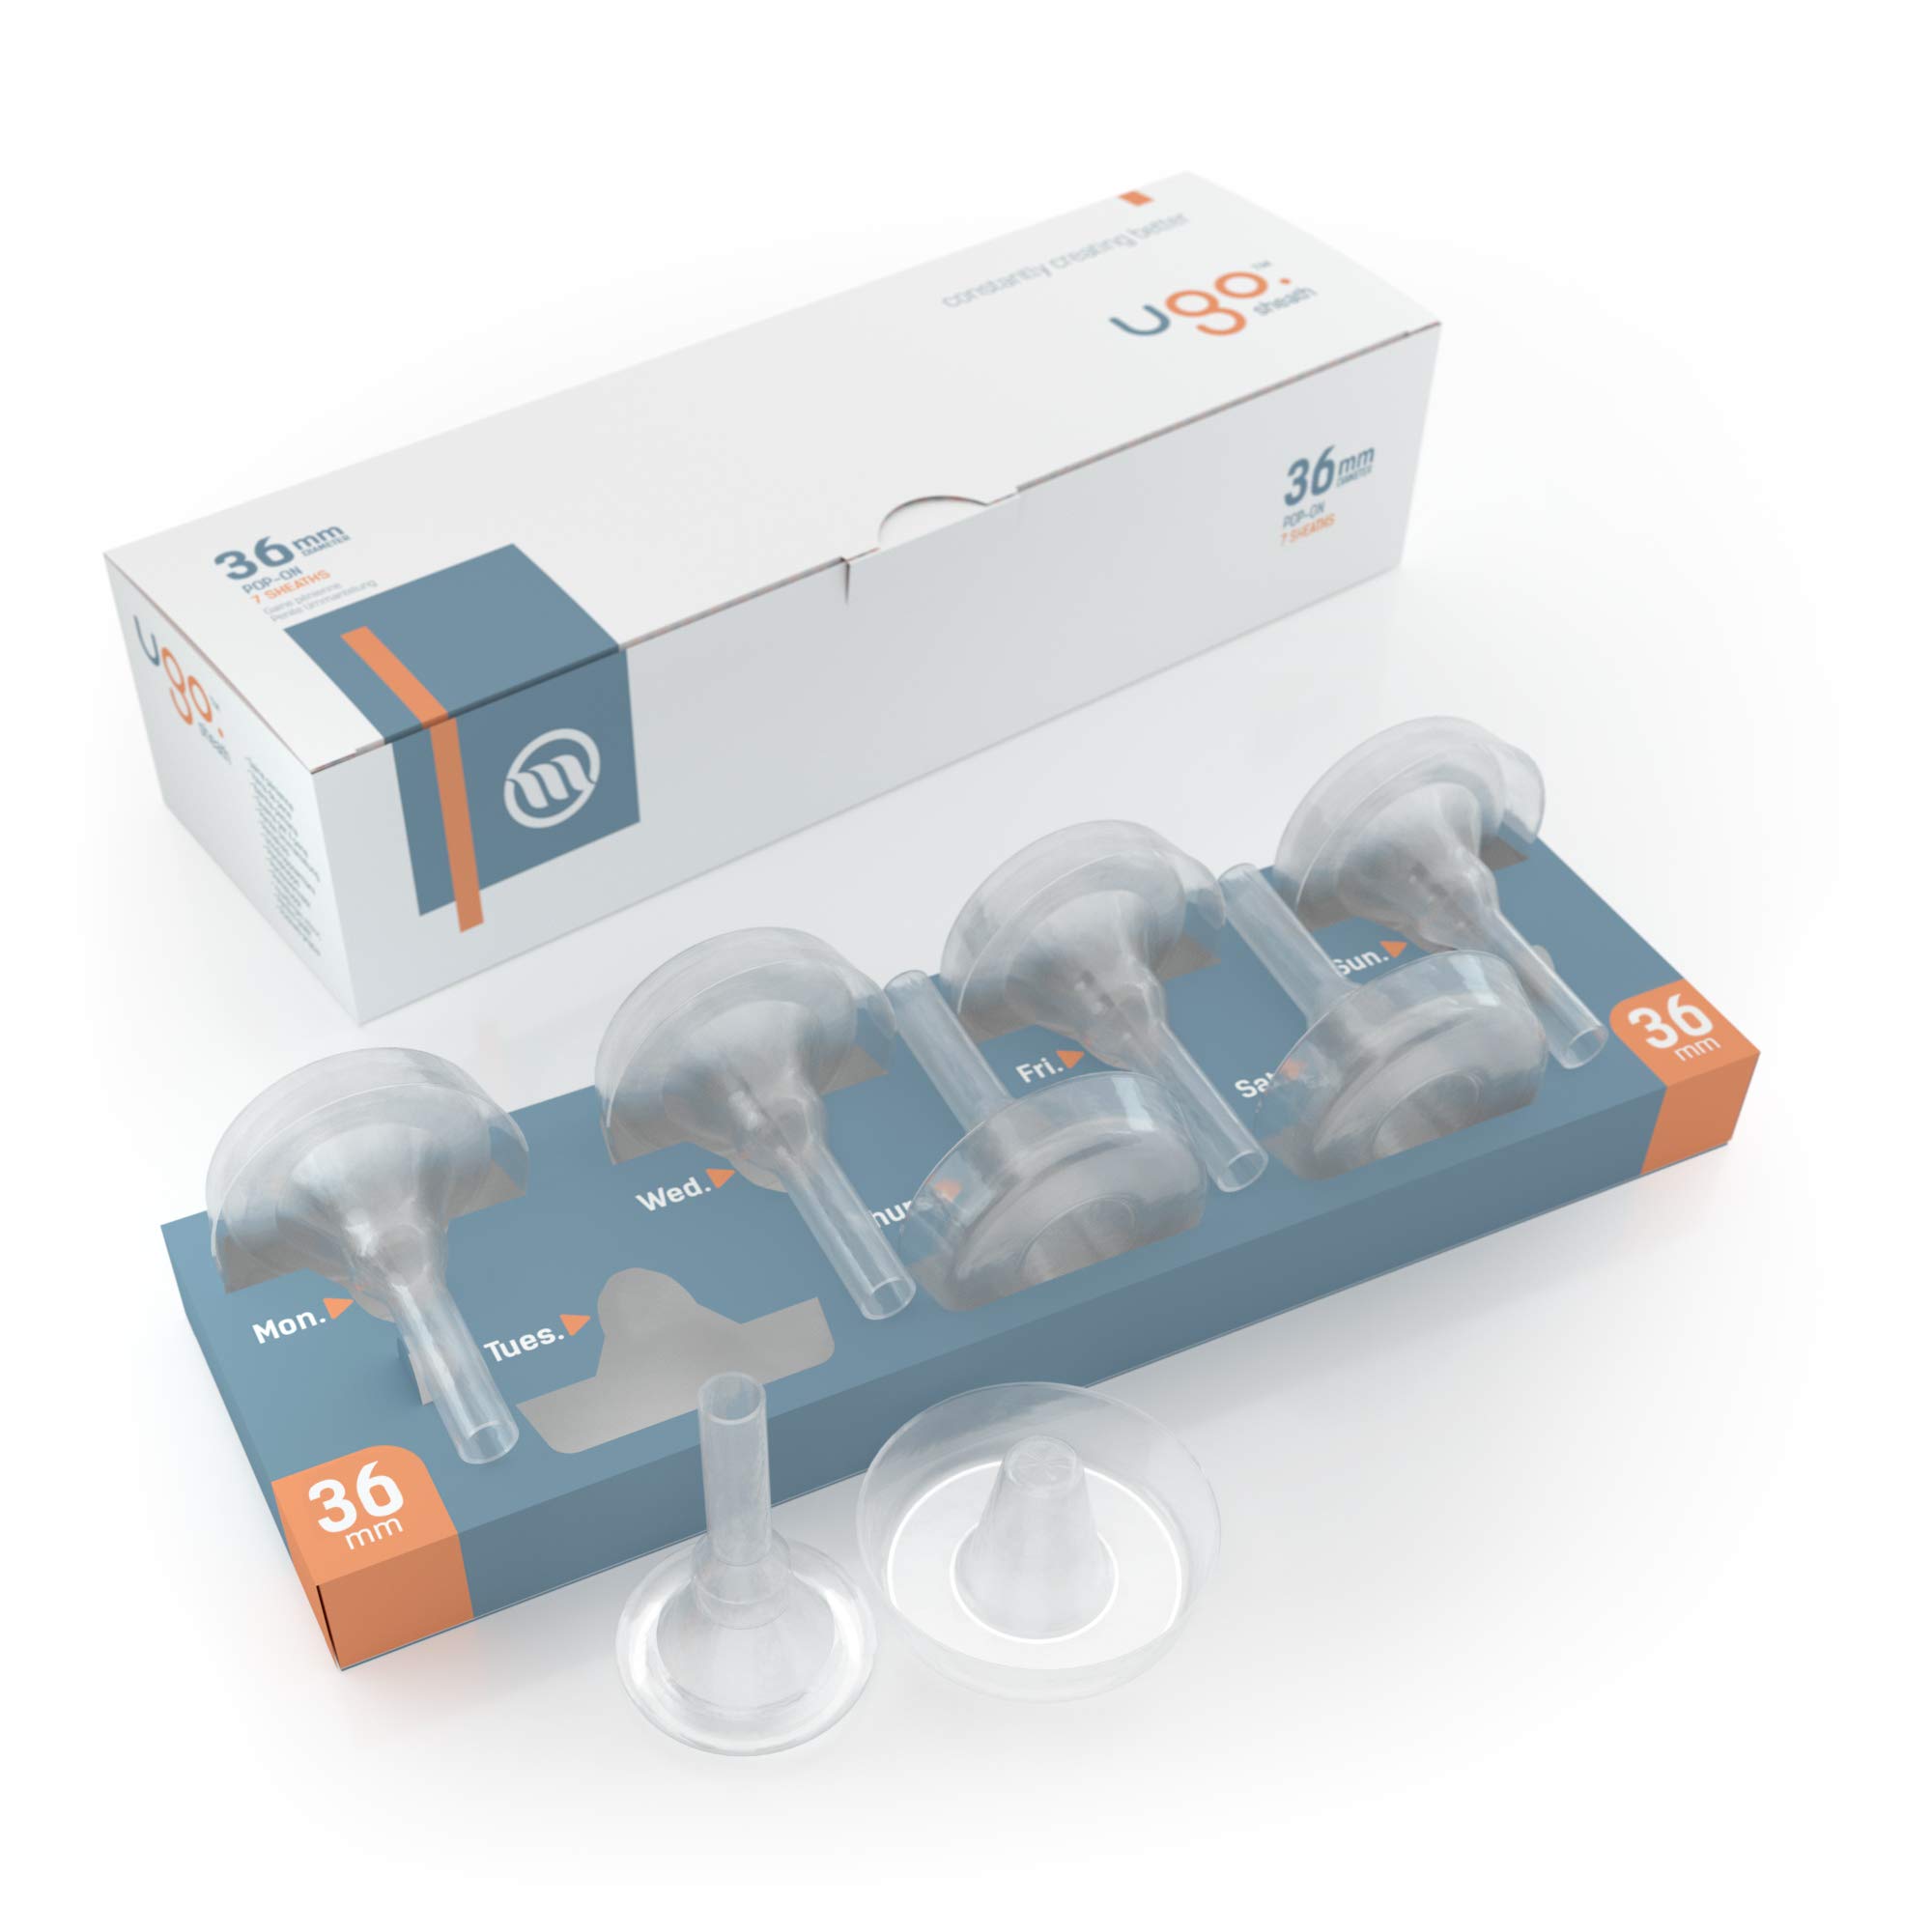 Ugo-Scheide (x28) - 1-Monats-Versorgung mit Kondomen für externe Urin-Katheter - selbstklebend und latexfrei (Länge - Kurz, Durchmesser - 36mm)